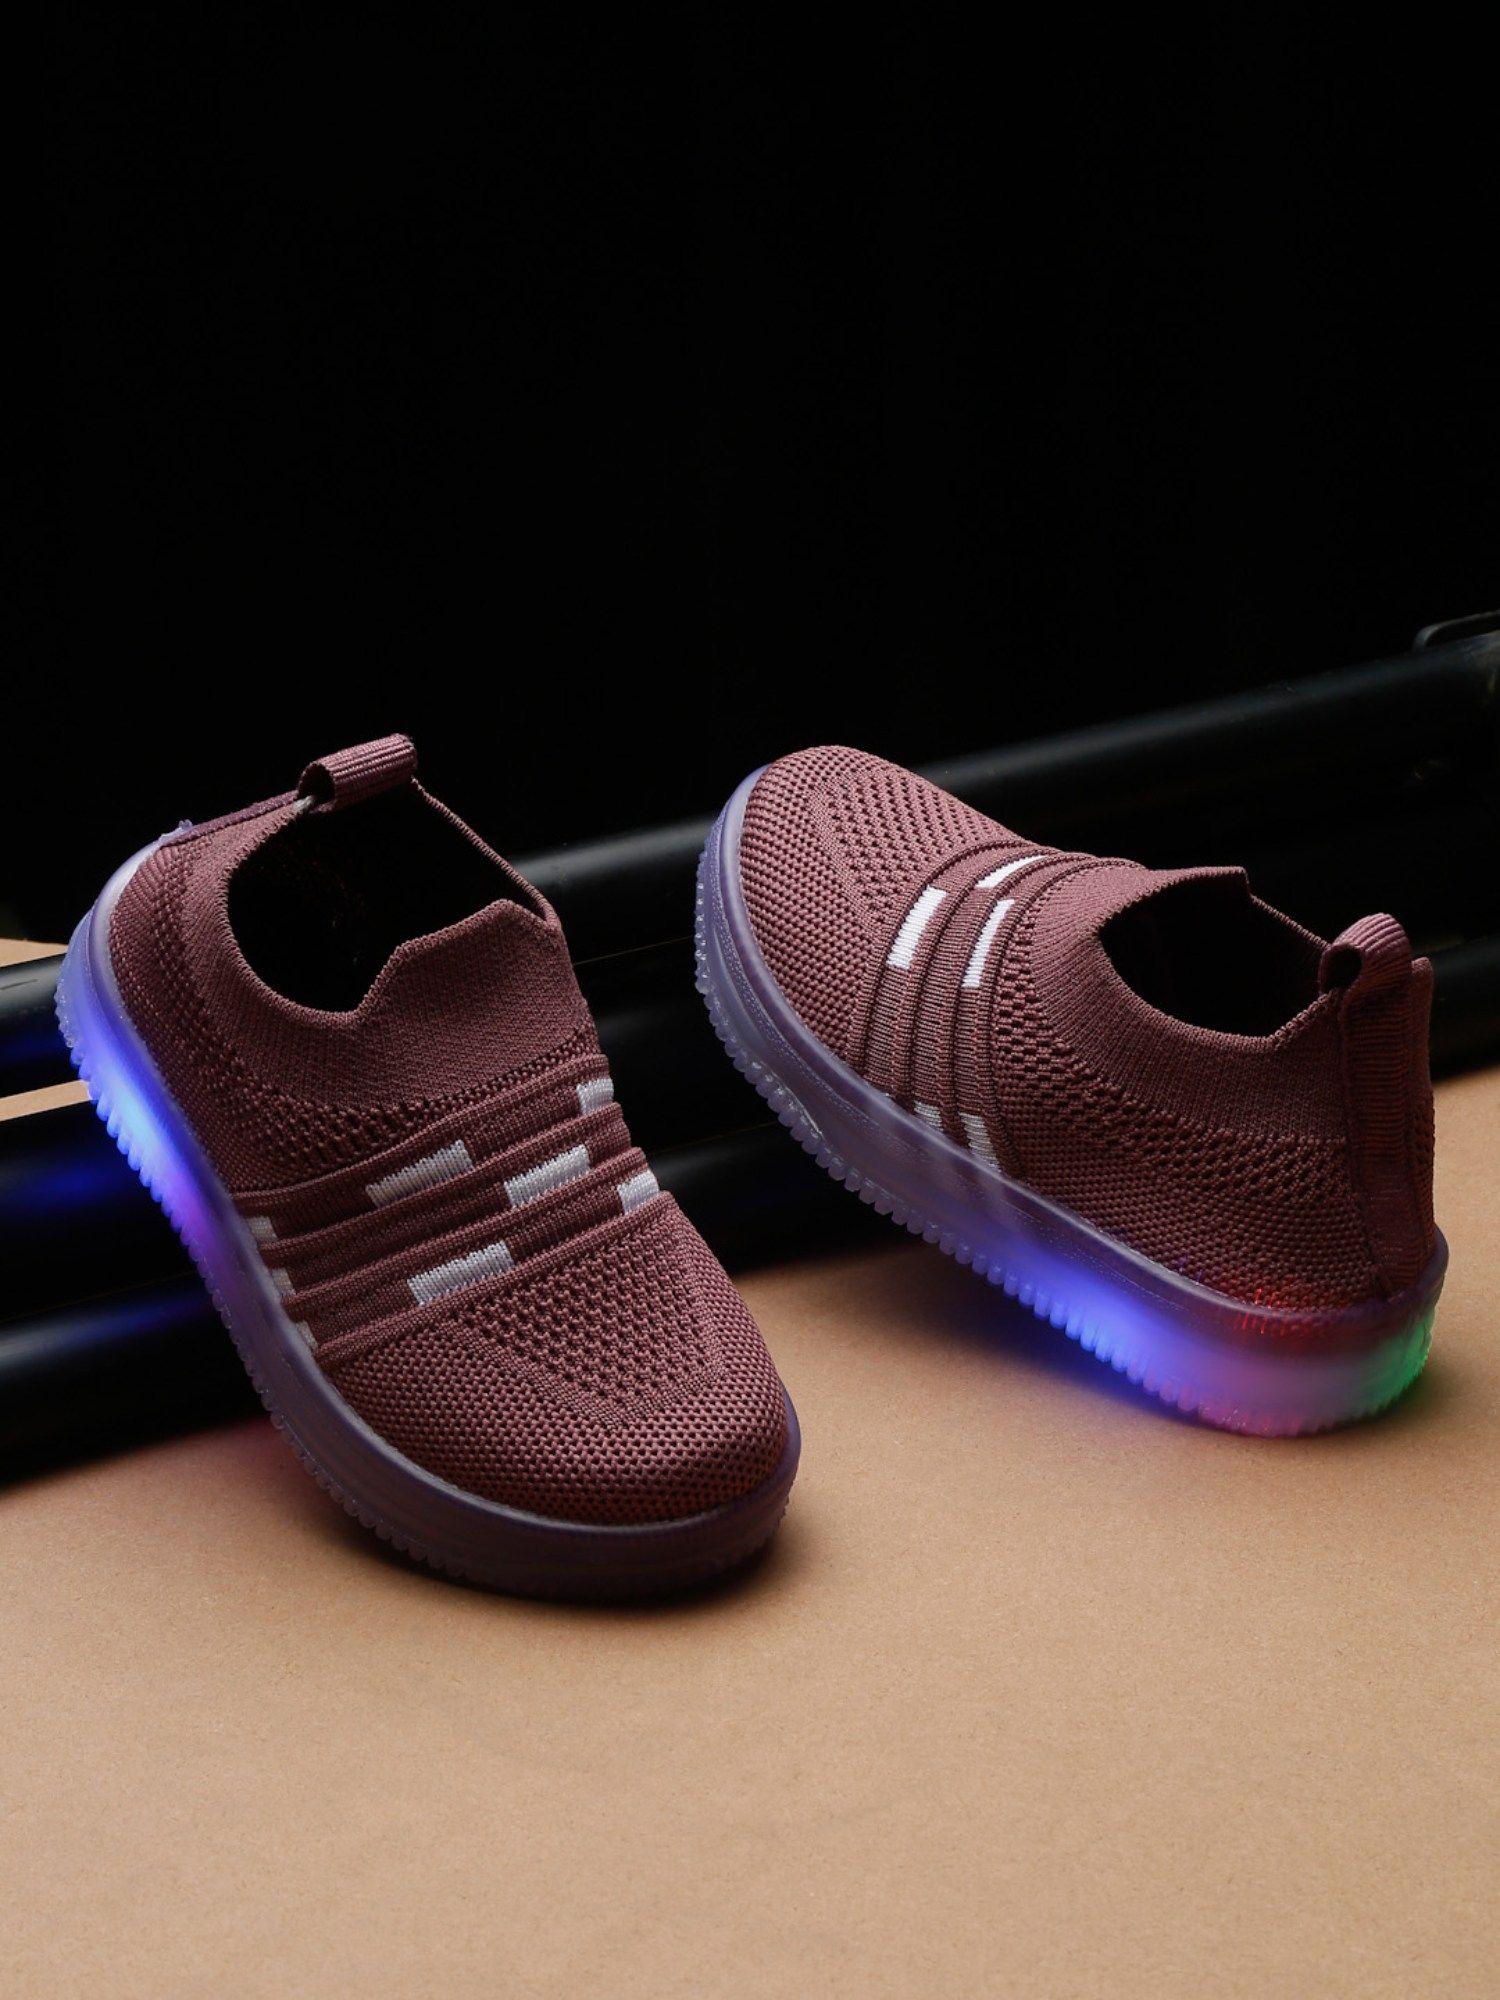 unisex led slip ons sneakers - purple